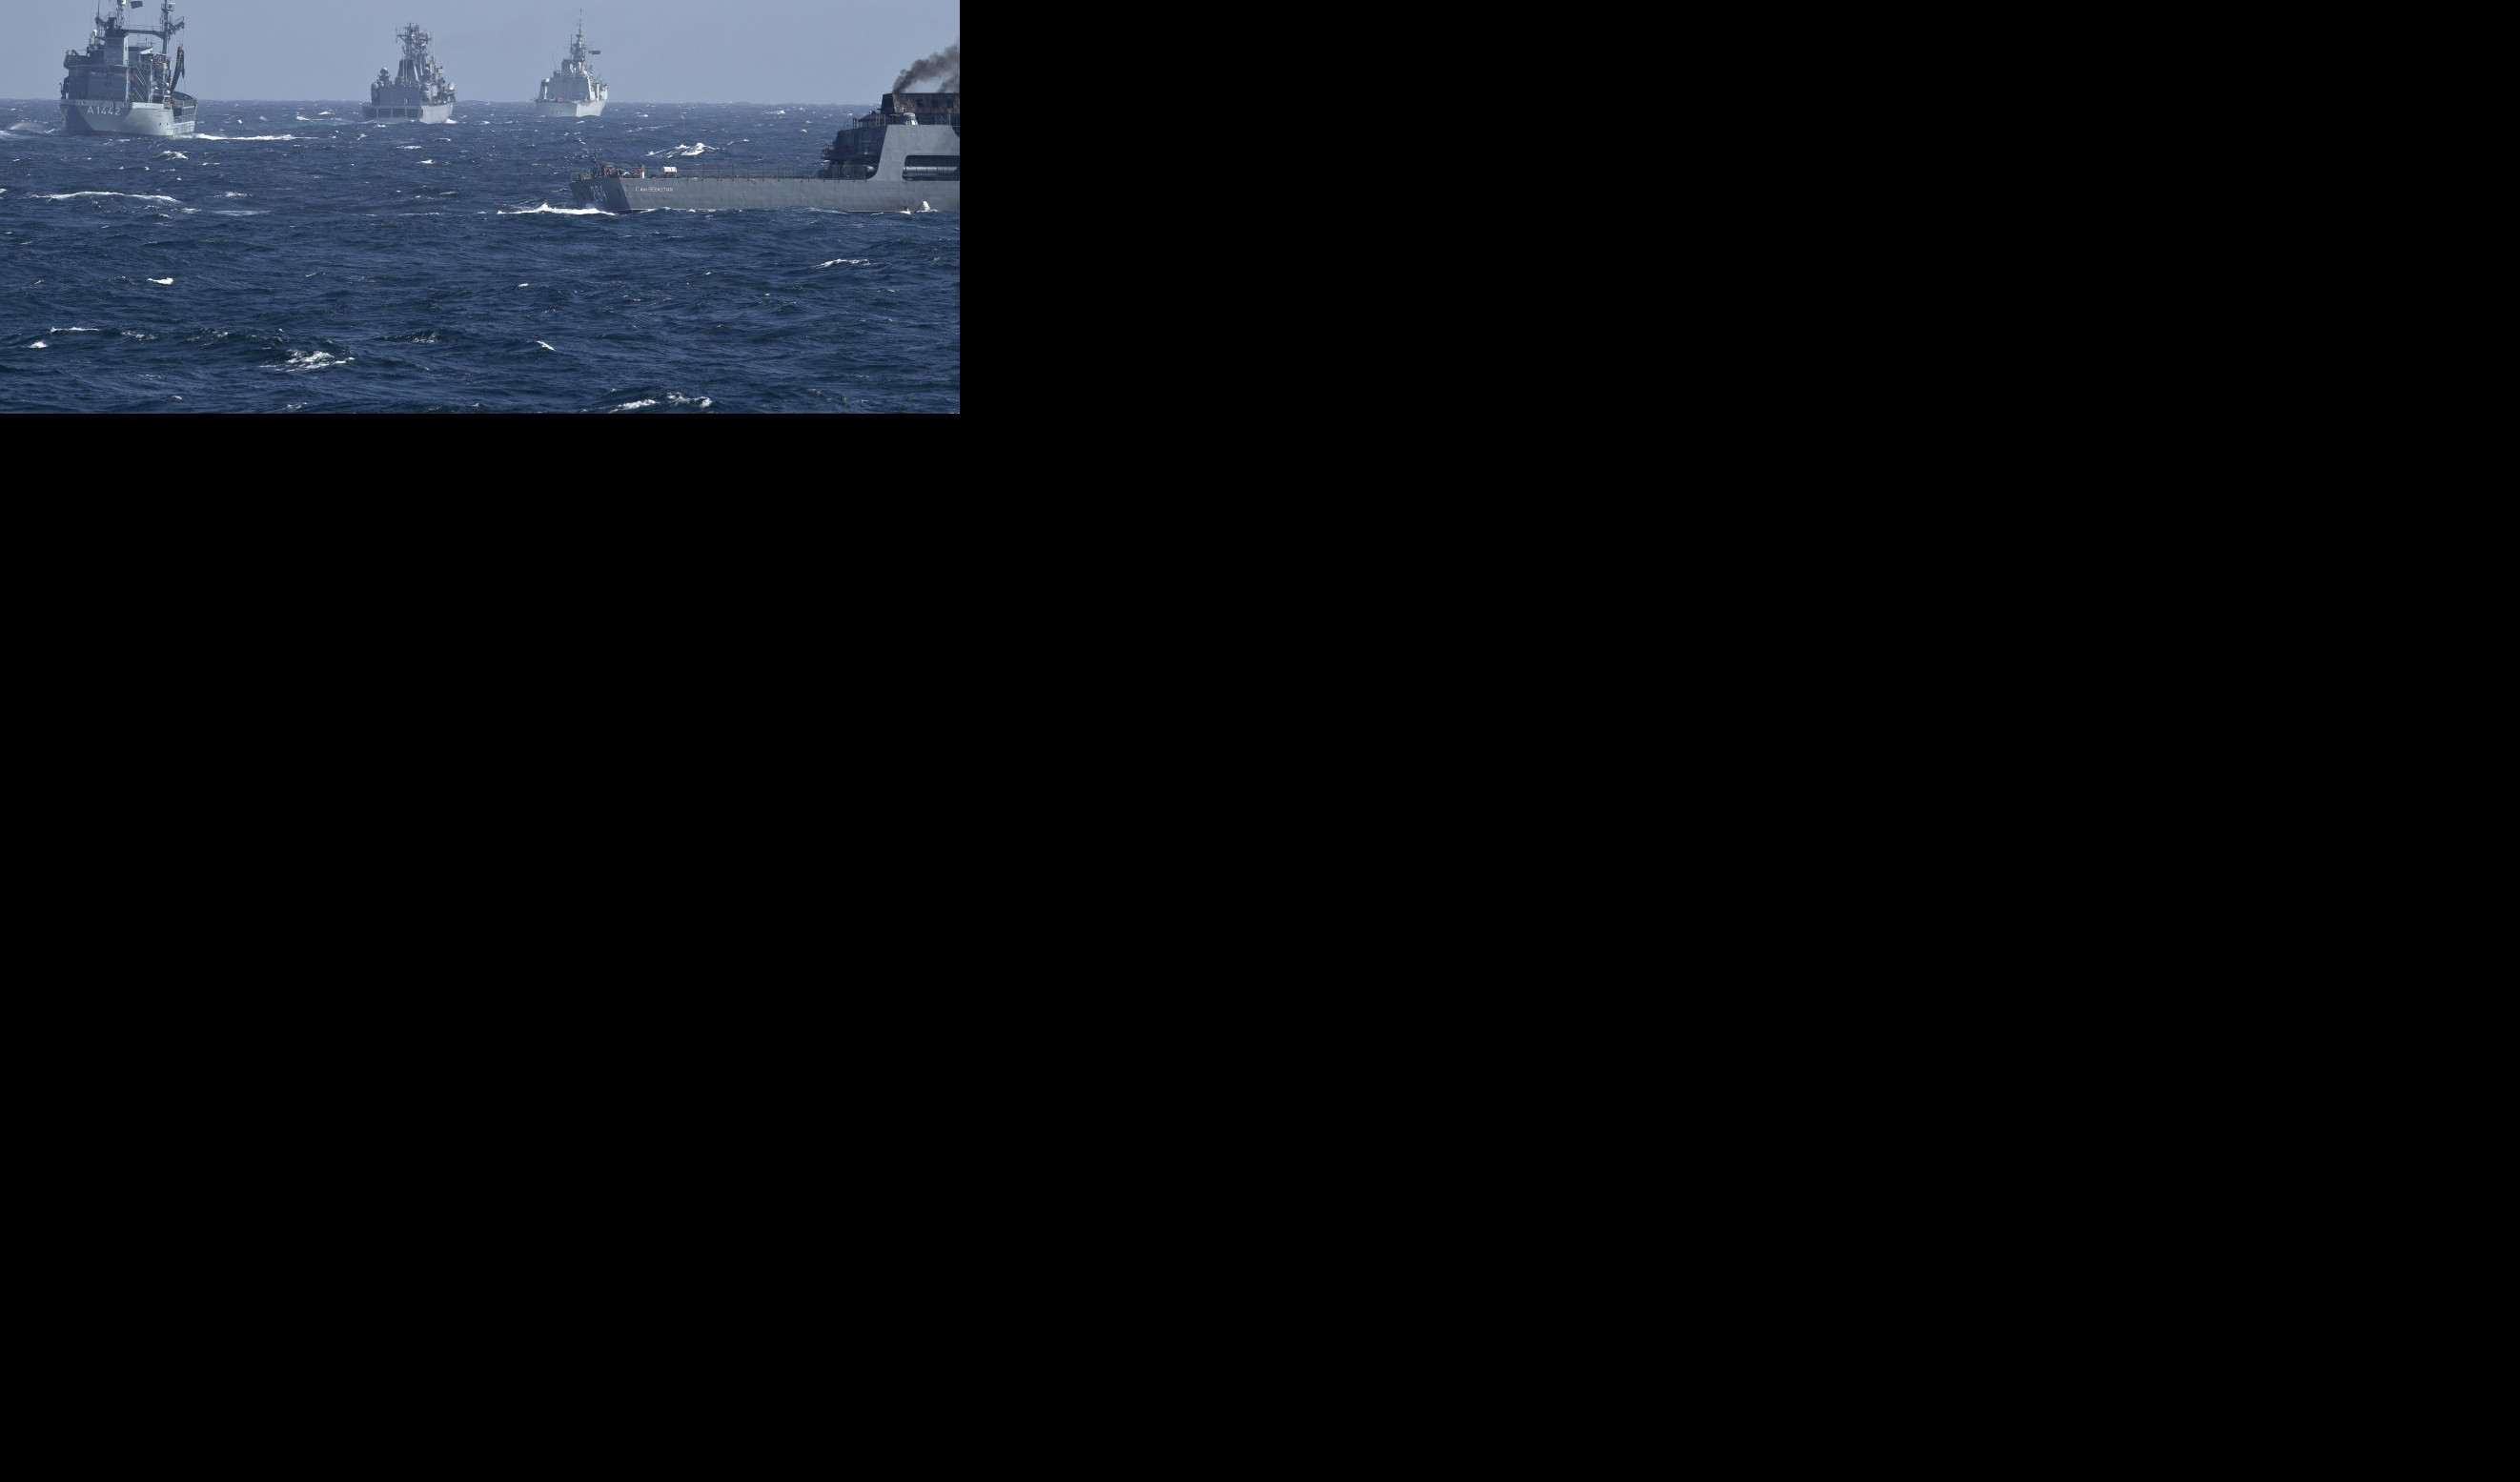 PROVOCIRAO KOD KRIMA, PA BEŽAO KADA SU RUSI ZAPUCALI! Objavljena RUTA PLOVIDBE ratnog broda koja OTKRIVA BRITANSKE LAŽI! /VIDEO/